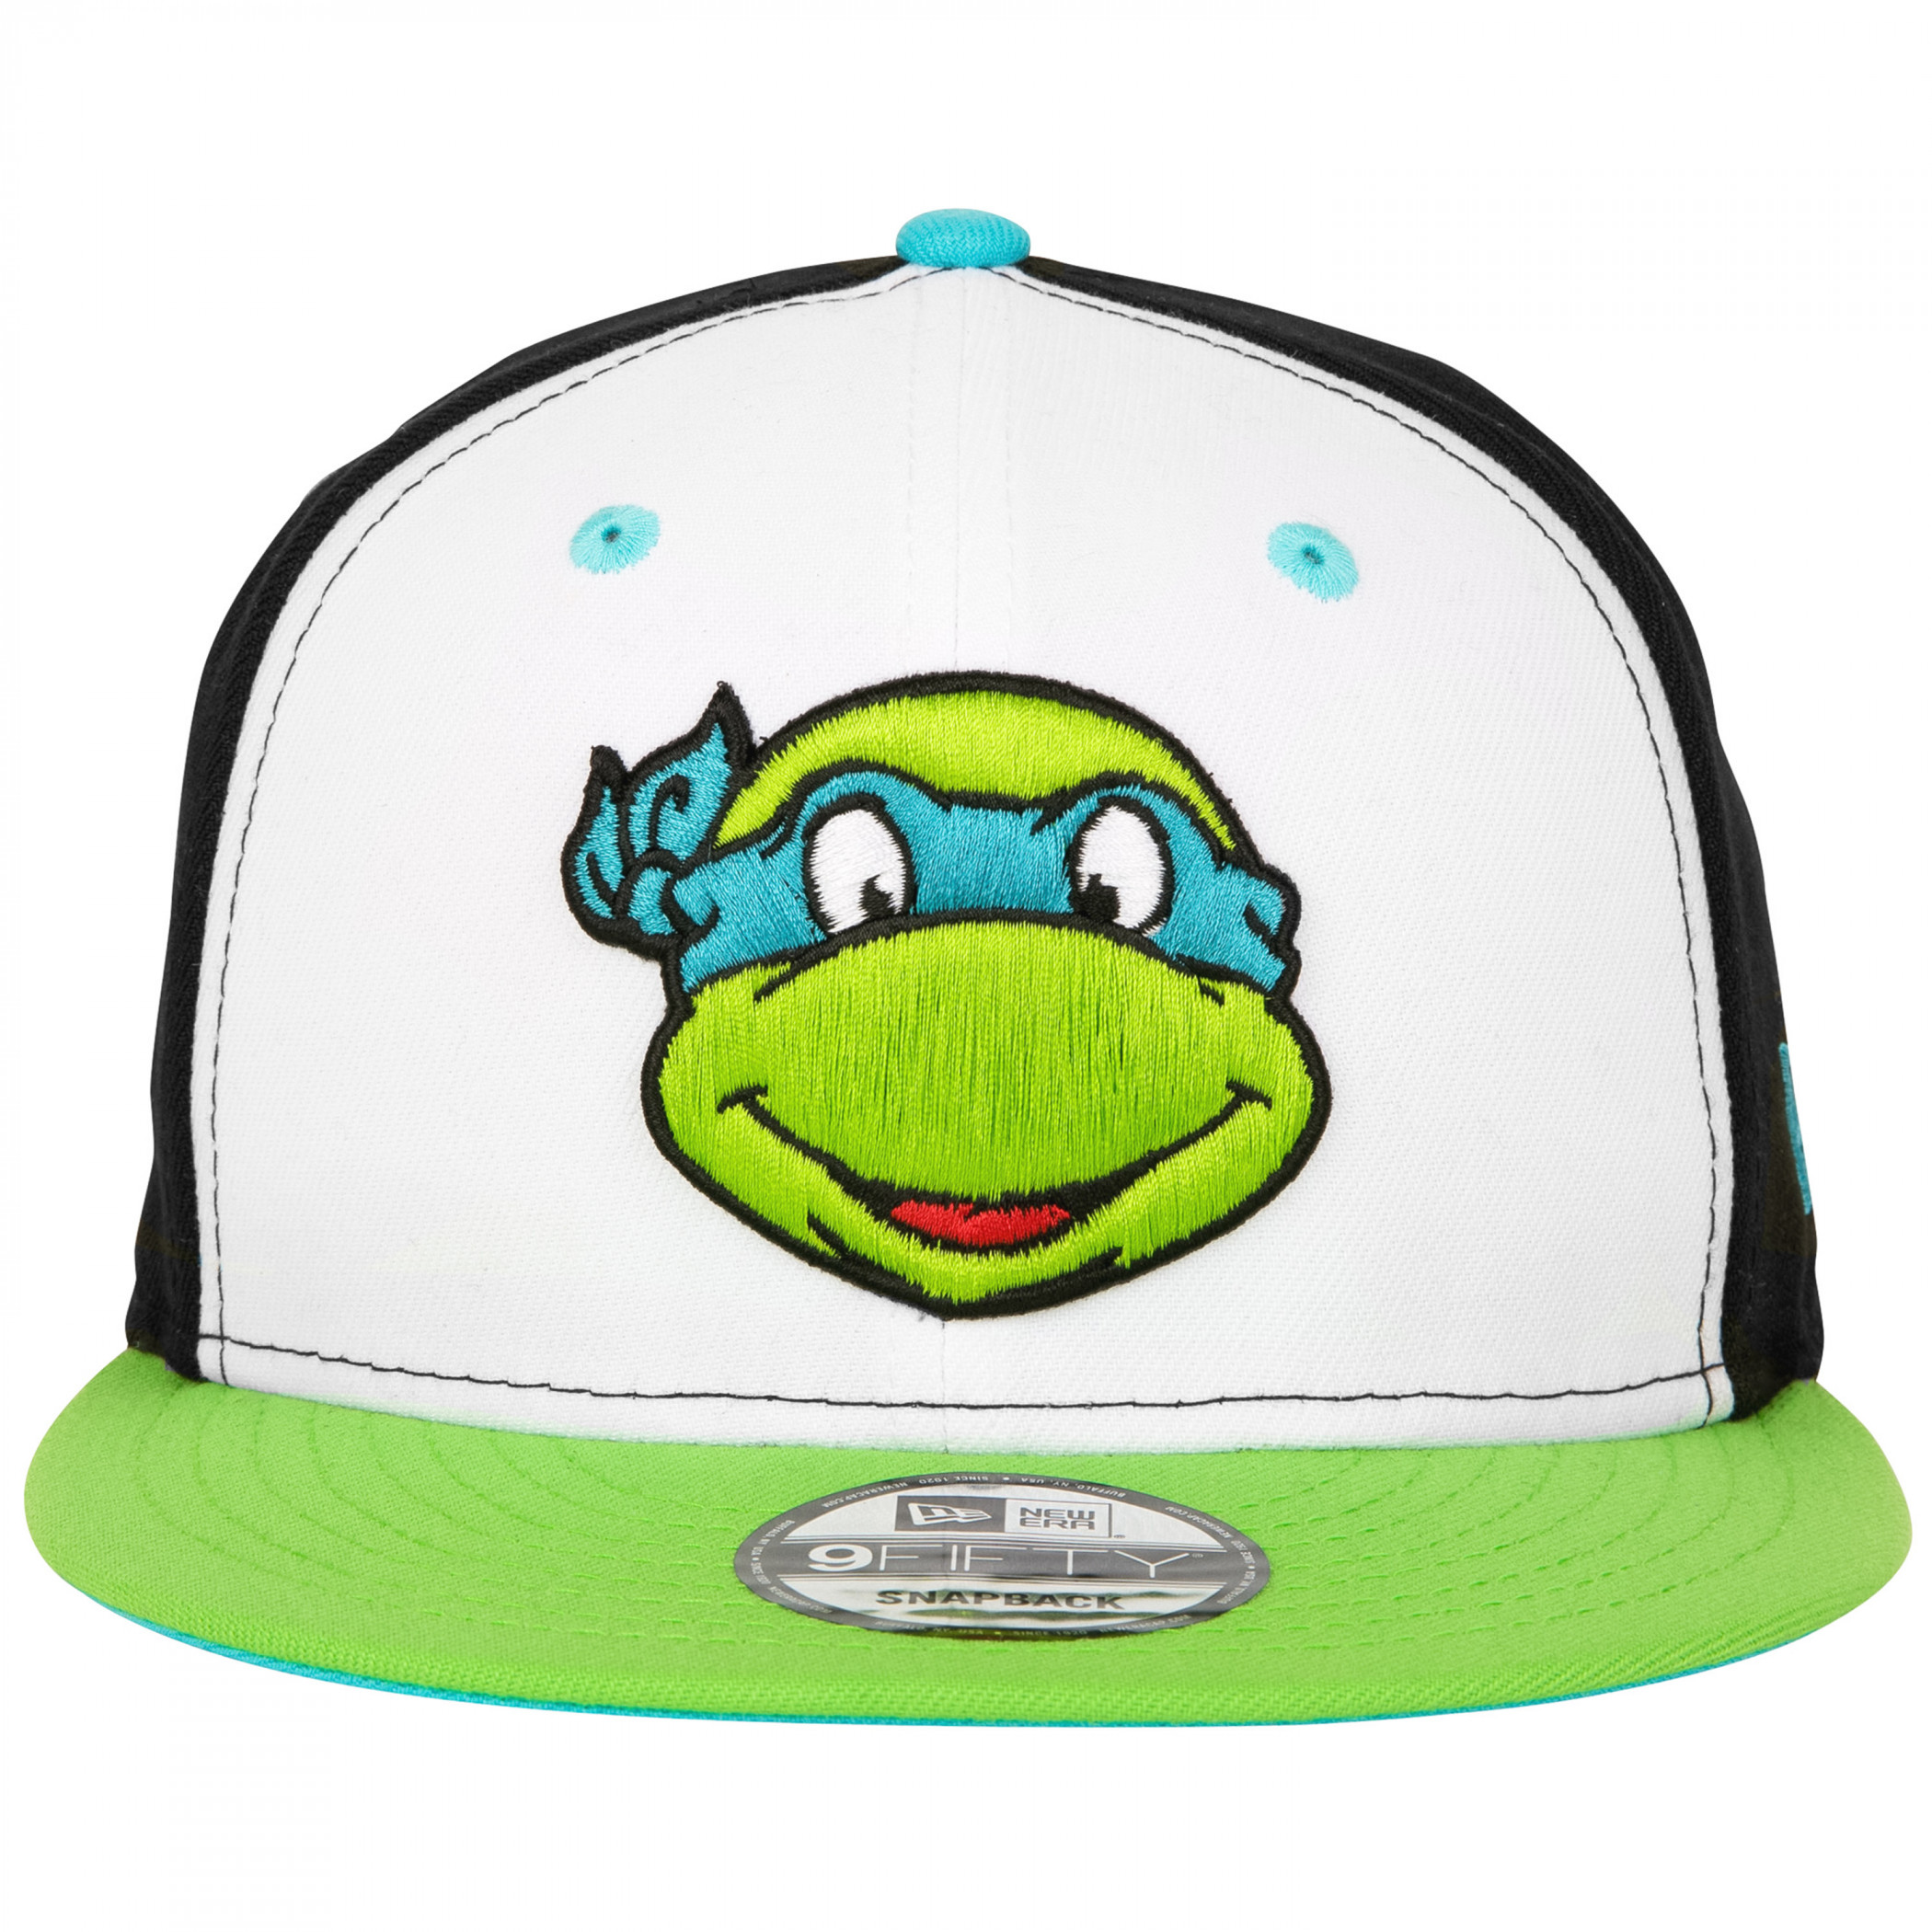 Teenage Mutant Ninja Turtles TMNT Leonardo New Era 9Fifty Adjustable Hat